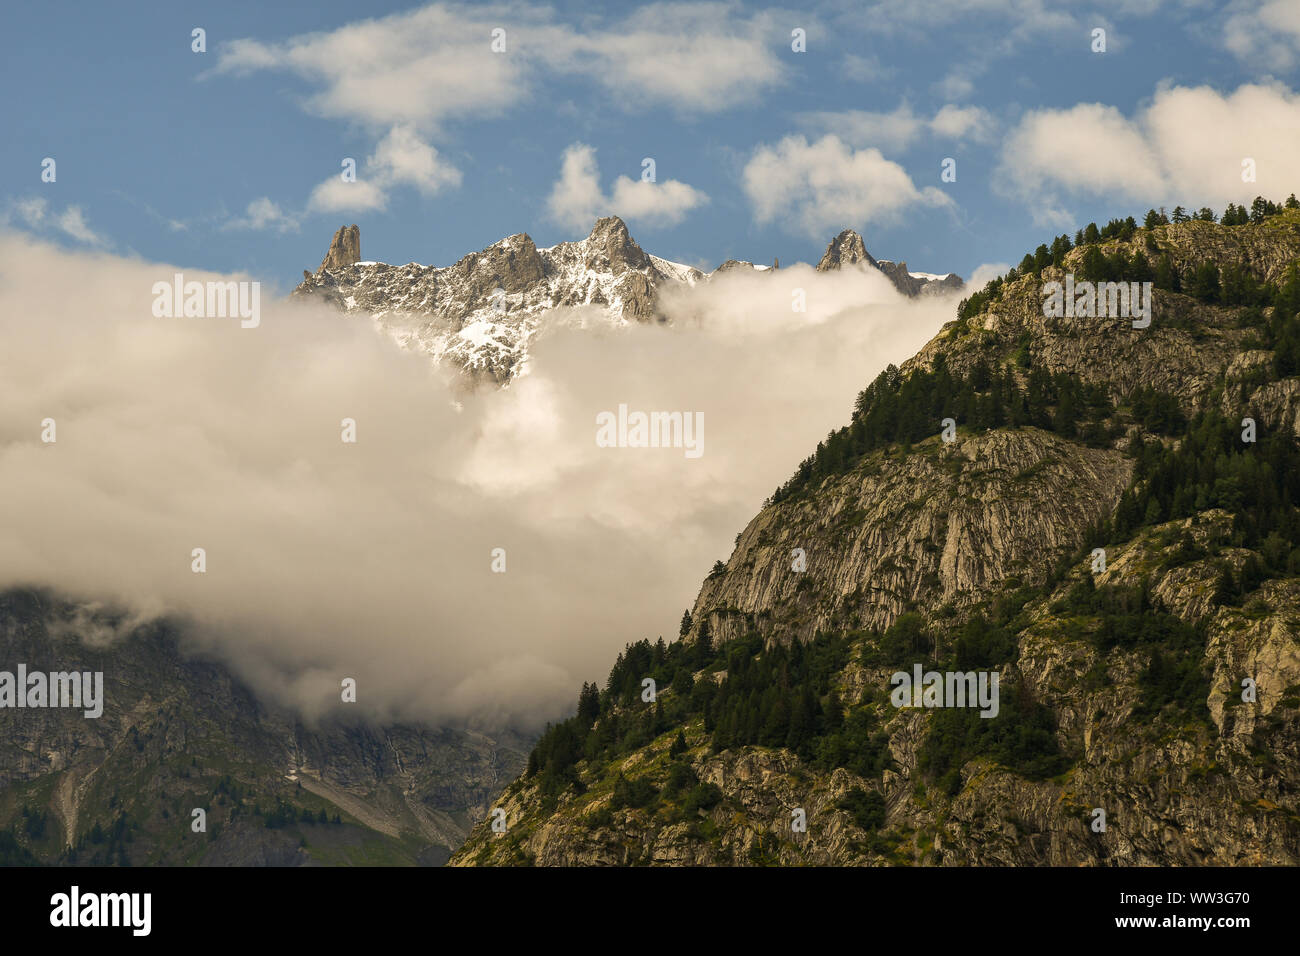 Vista in elevazione della catena montuosa del Monte Bianco con la Dent du Geant picco (il Dente del Gigante) tra le nuvole in estate, Courmayeur, in Valle d'Aosta, Italia Foto Stock